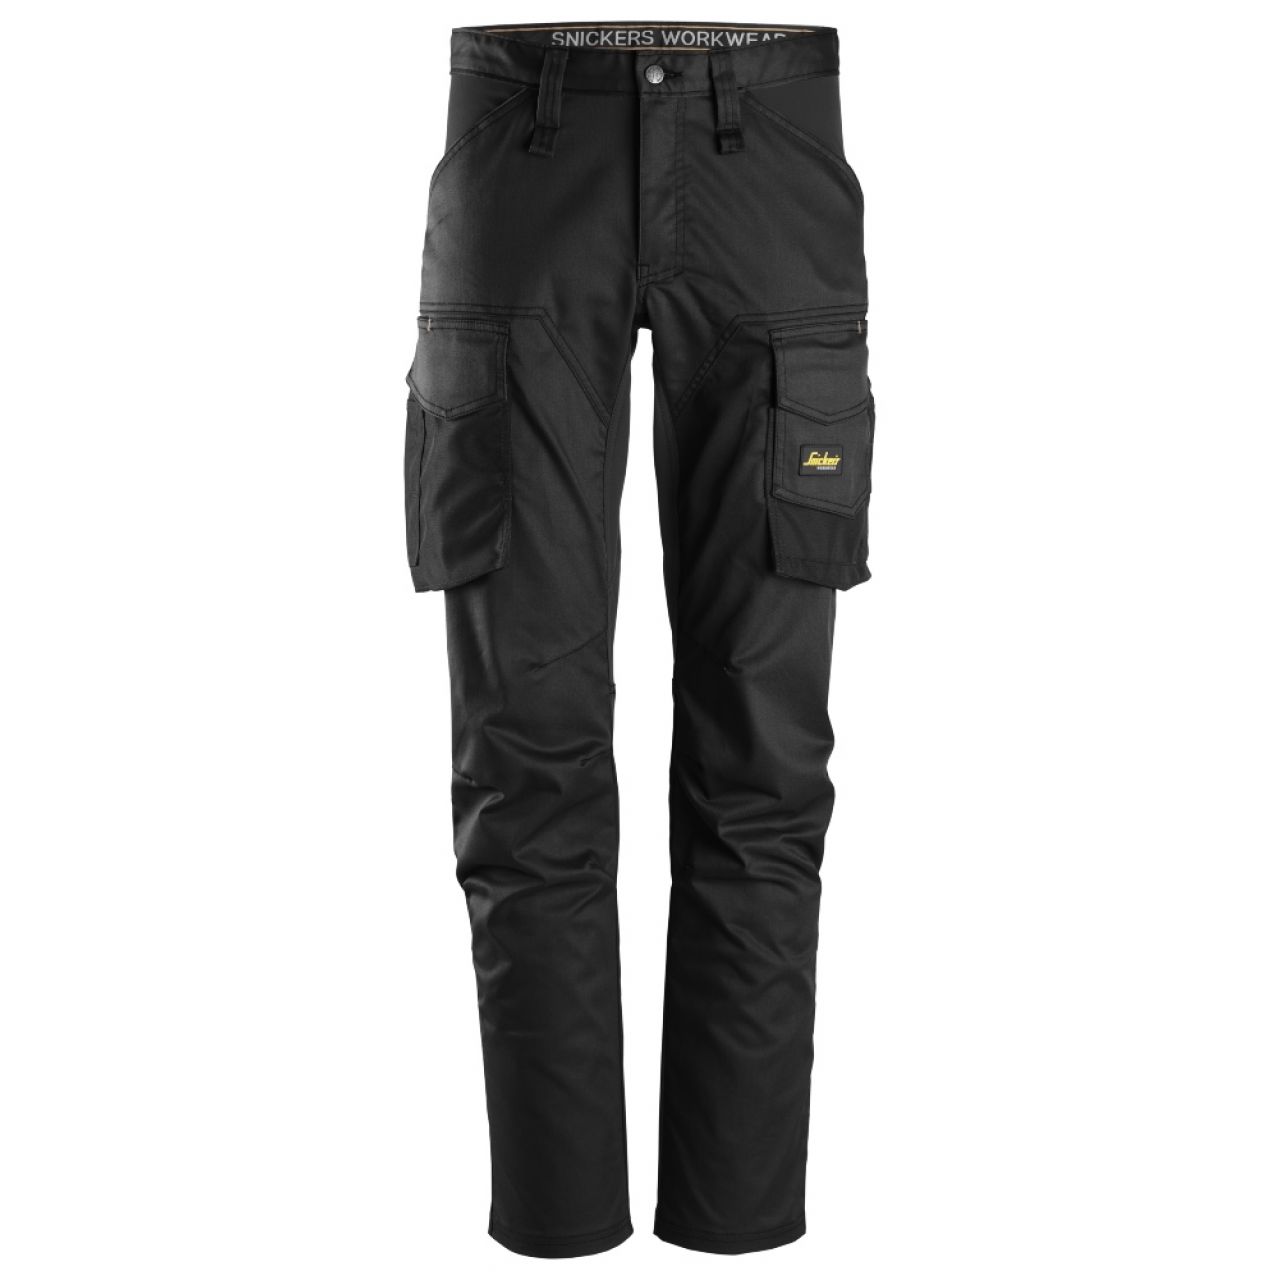 6803 Pantalones largos de trabajo elásticos sin bolsillos para las rodilleras AllroundWork negro talla 100